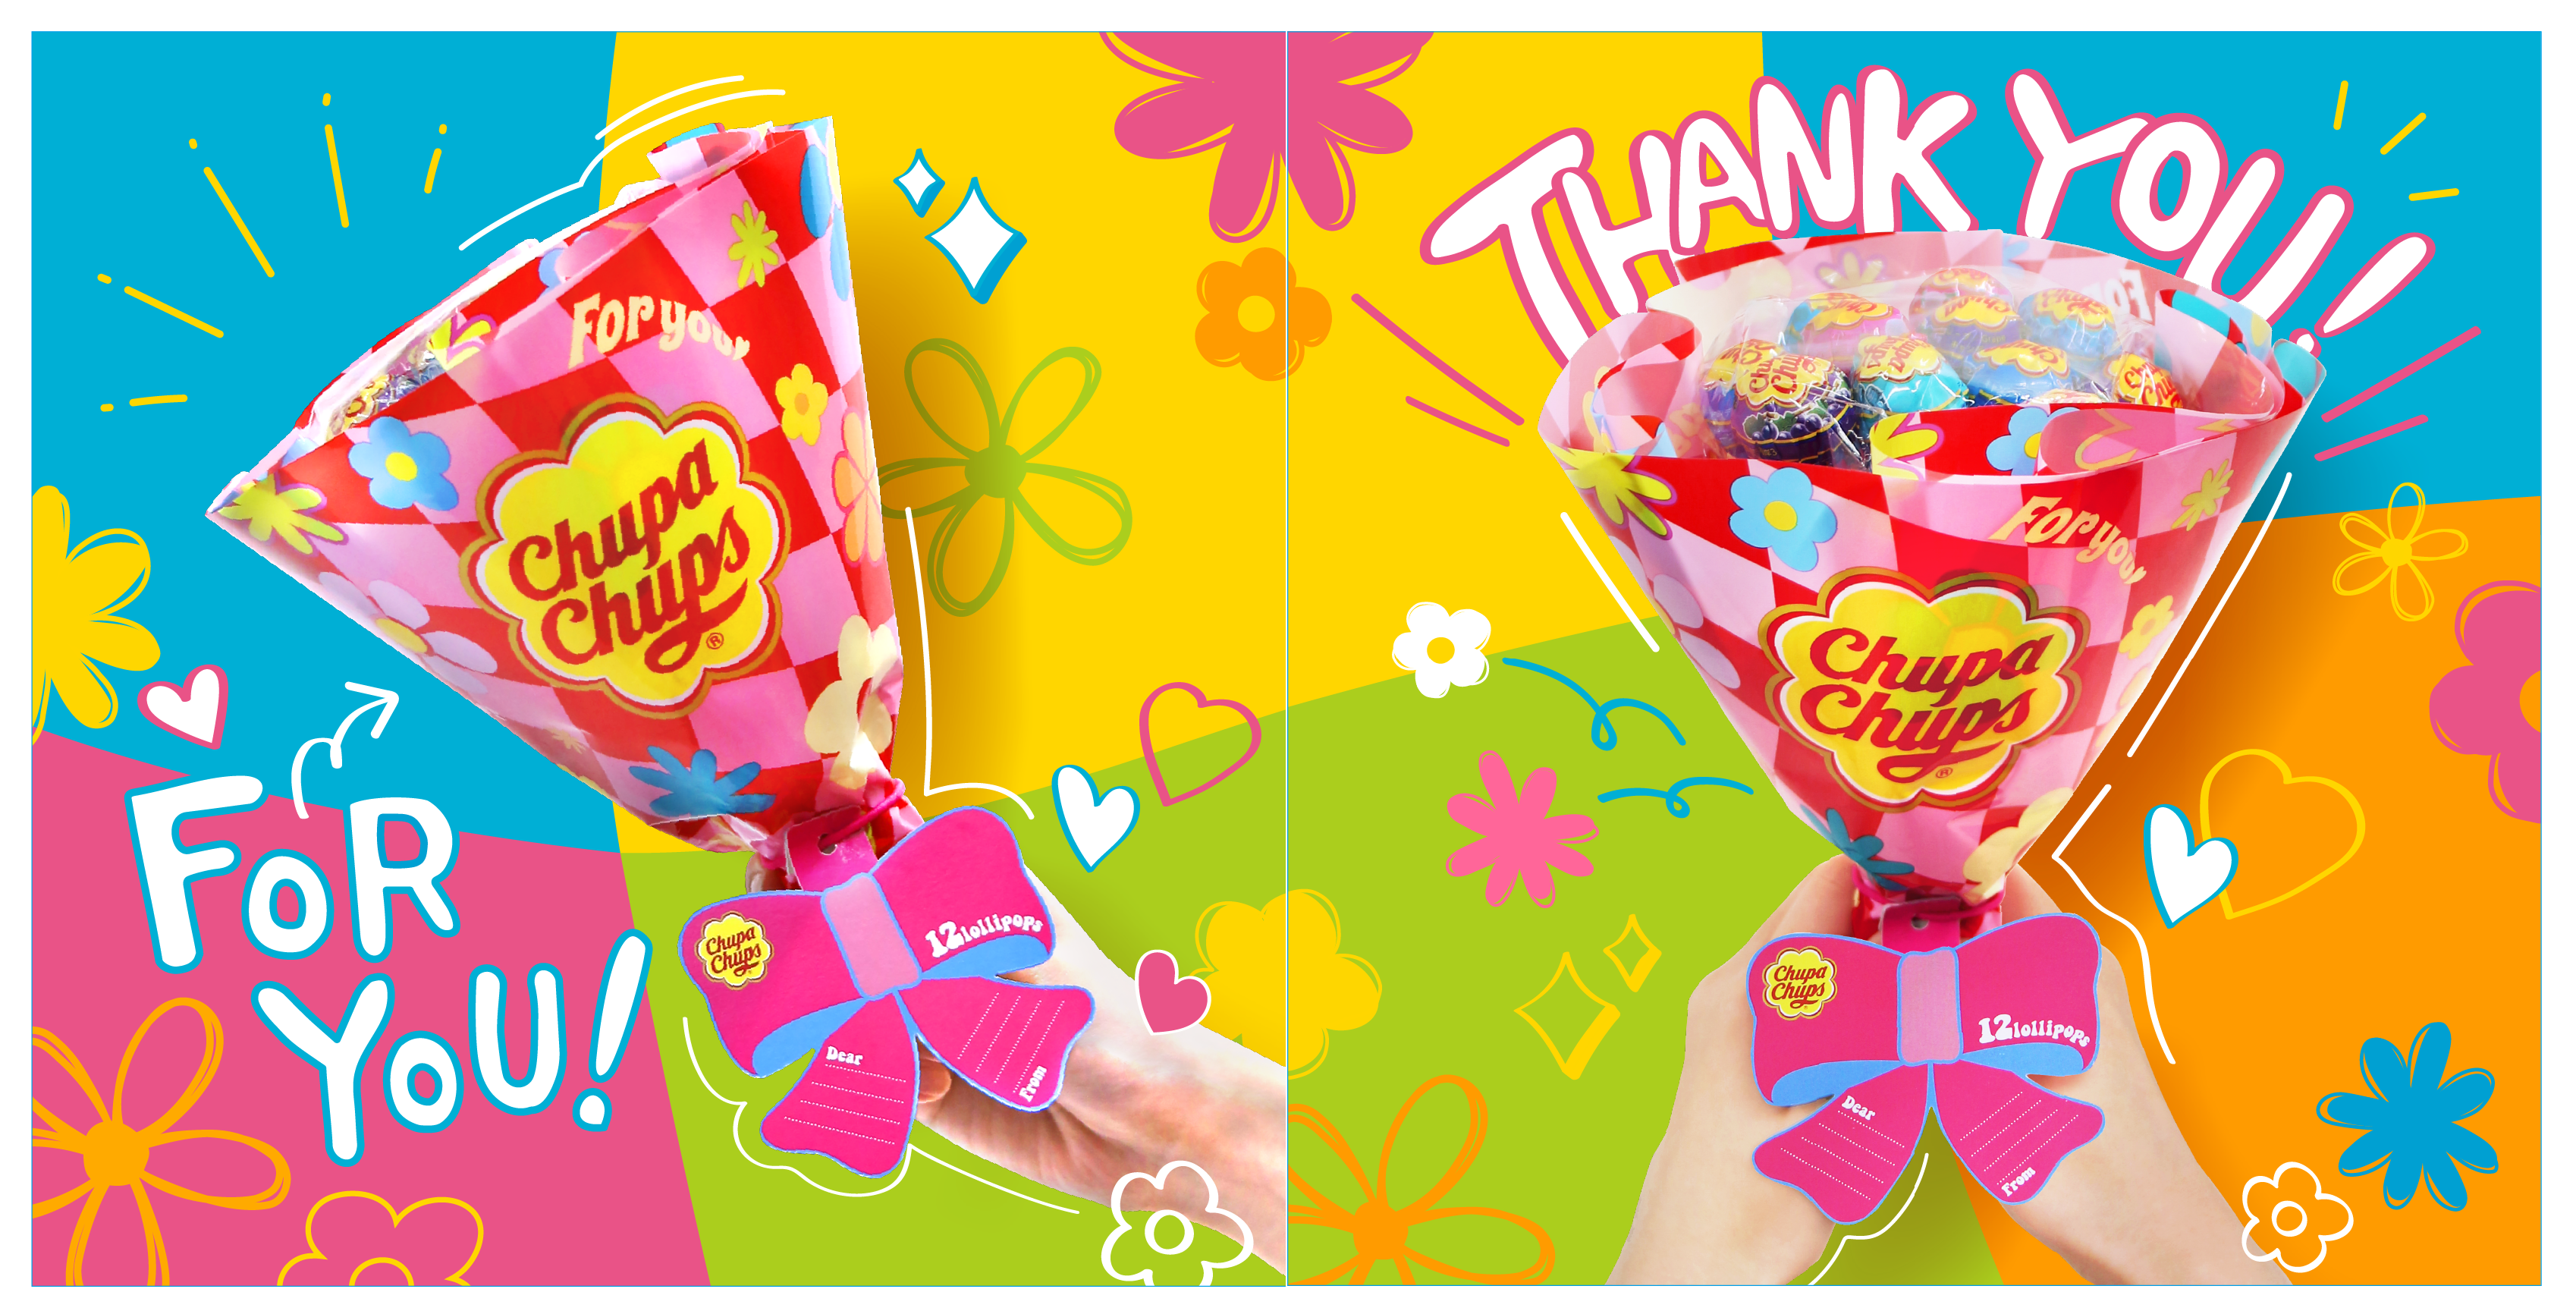 Chupa Chups For You チュッパチャプス フラワーブーケ がデザインリニューアル 手軽に 家族や友達に贈るプレゼント として最適 飾っても楽しめるカラフルな花束が1月24日より全国発売 クラシエフーズのプレスリリース